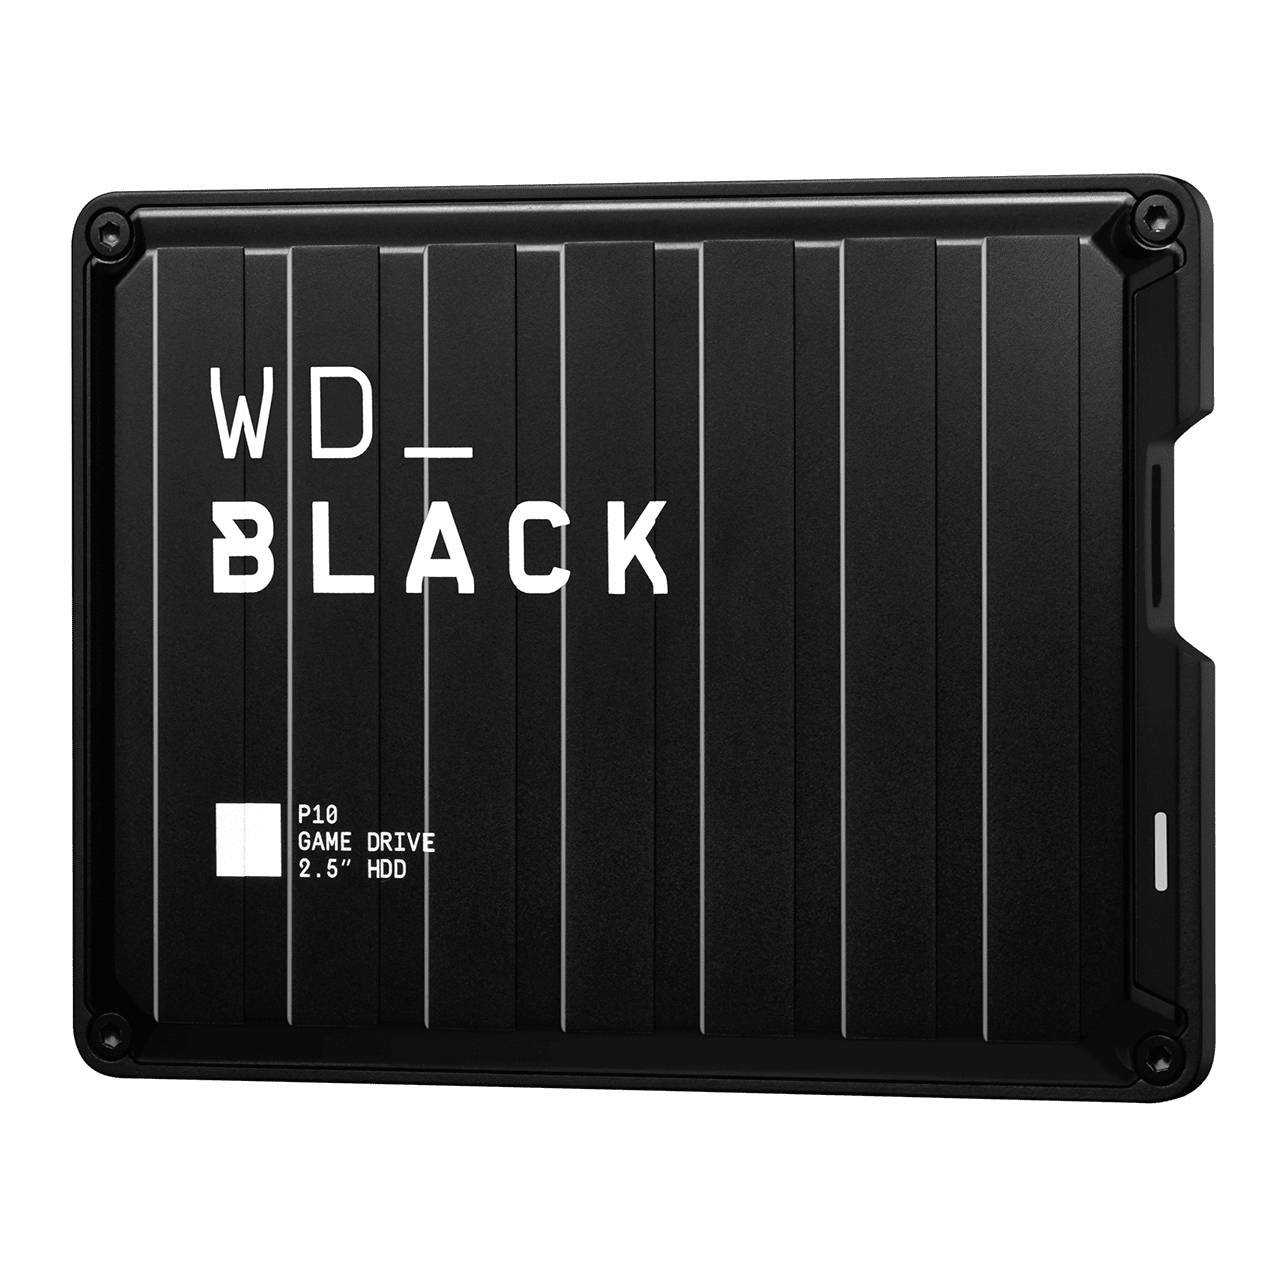 Western Digital Black P10